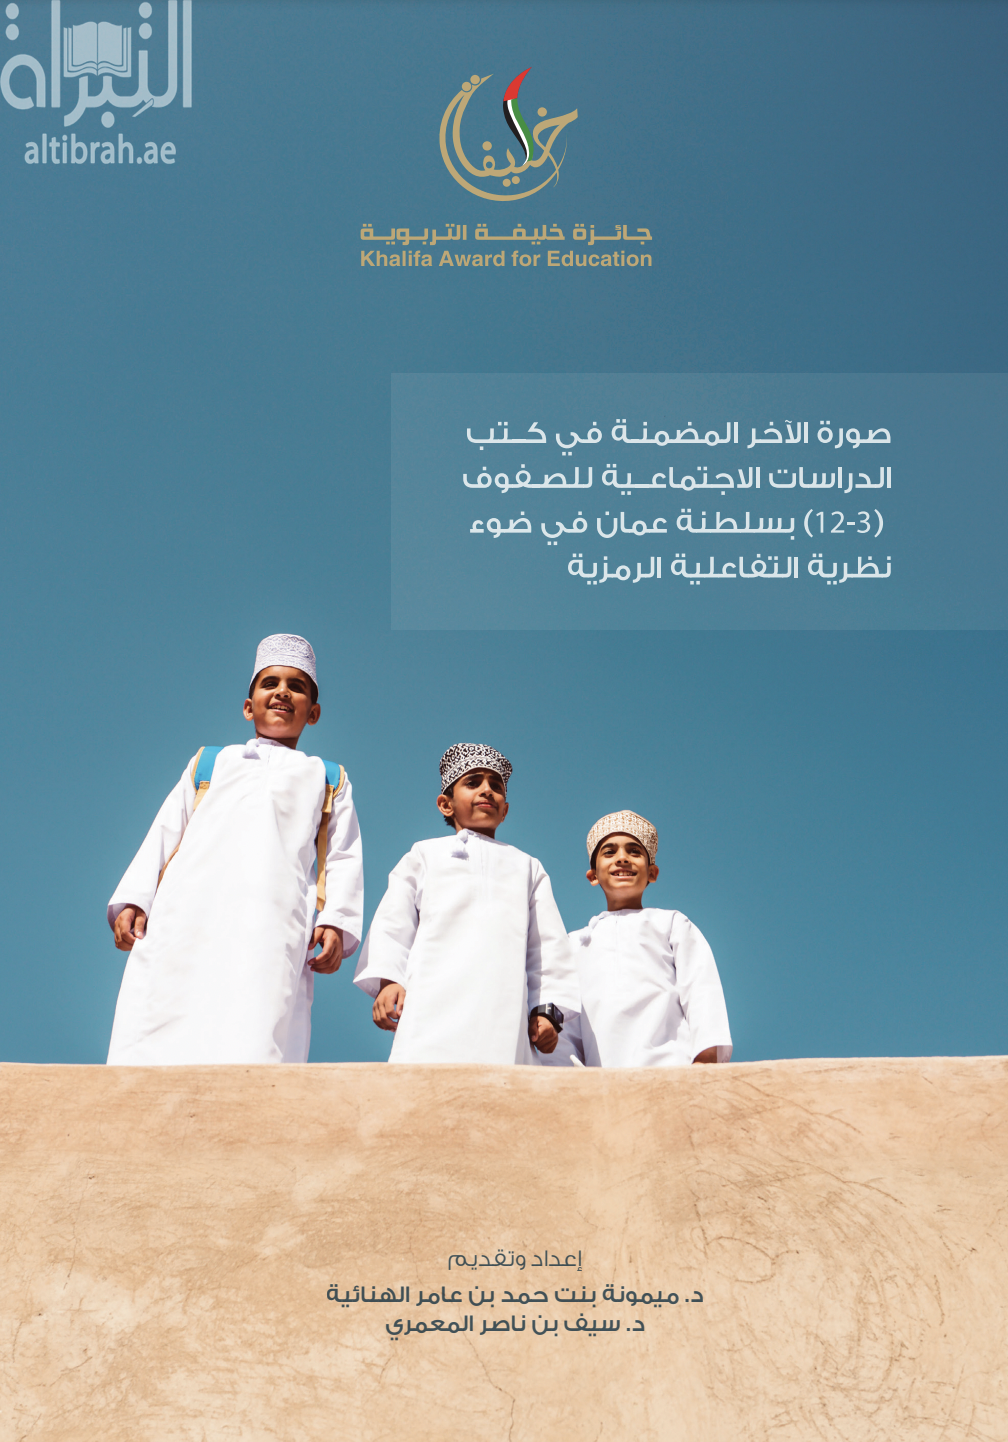 كتاب صورة الآخر المضمنة في كتب الدراسات الاجتماعية للصفوف ( 3 - 12 ) بسلطنة عمان في ضوء نظرية التفاعلية الرمزية